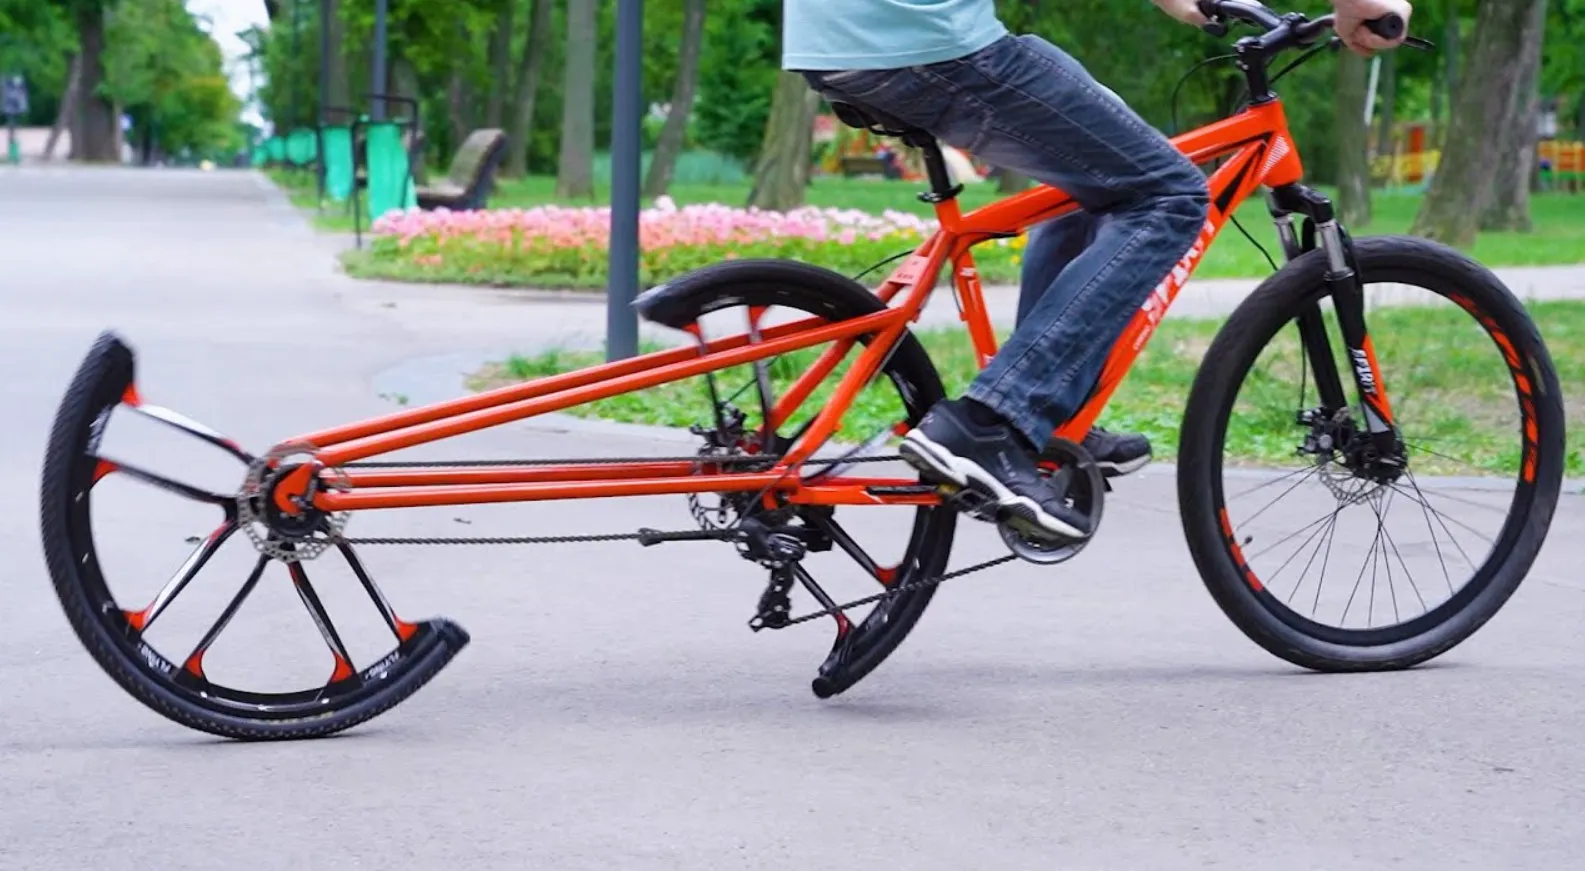 Chiếc xe đạp cực dị này di chuyển thế nào? Không tin nổi nó lại tồn tại!